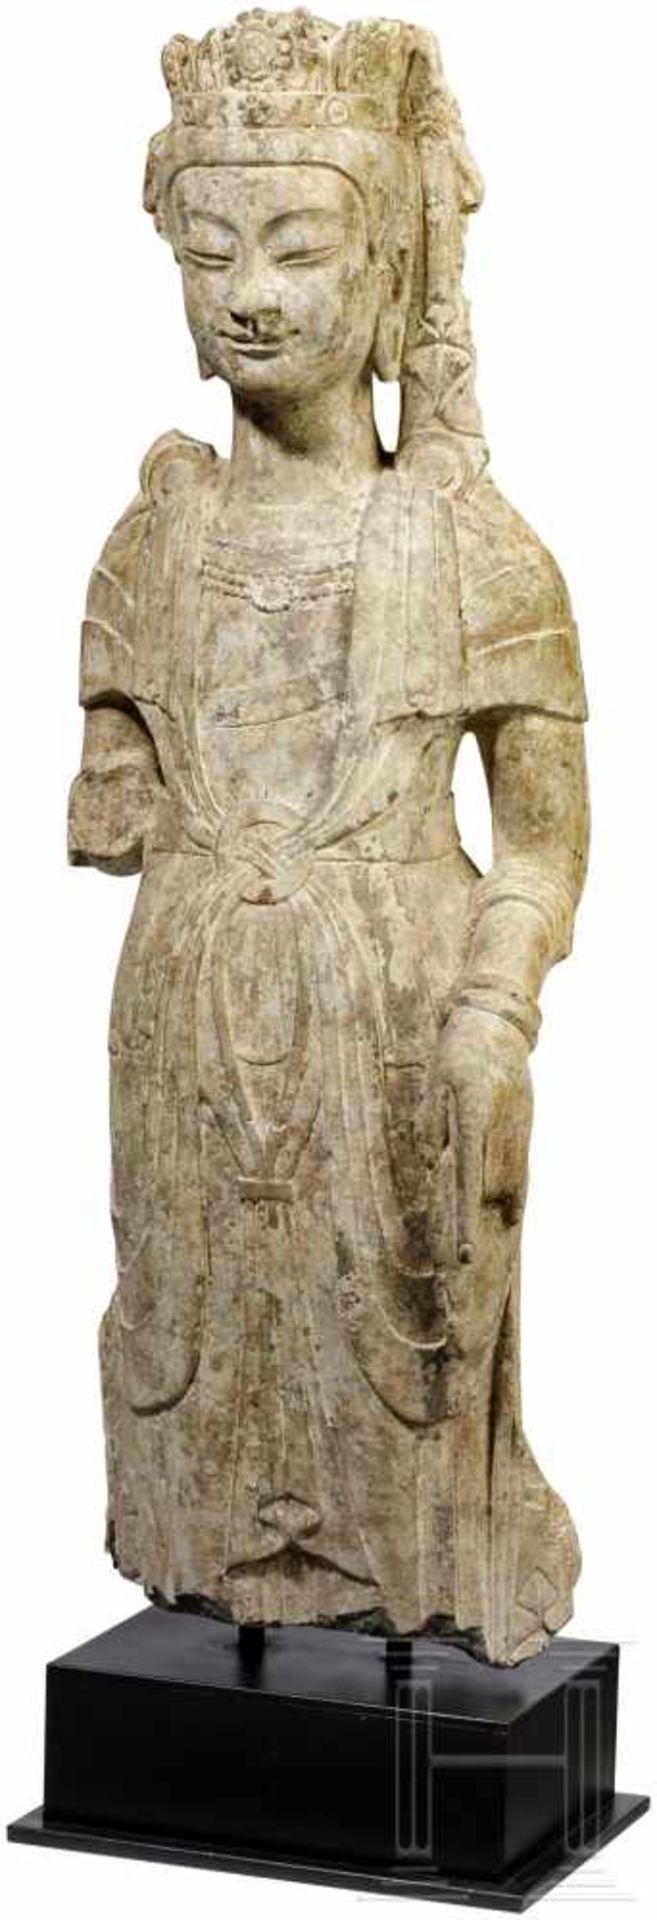 Figur eines stehenden Bodhisattvas, China, Nördliche Qi-Dynastie (550 - 577)Heller Kalkstein. Fein